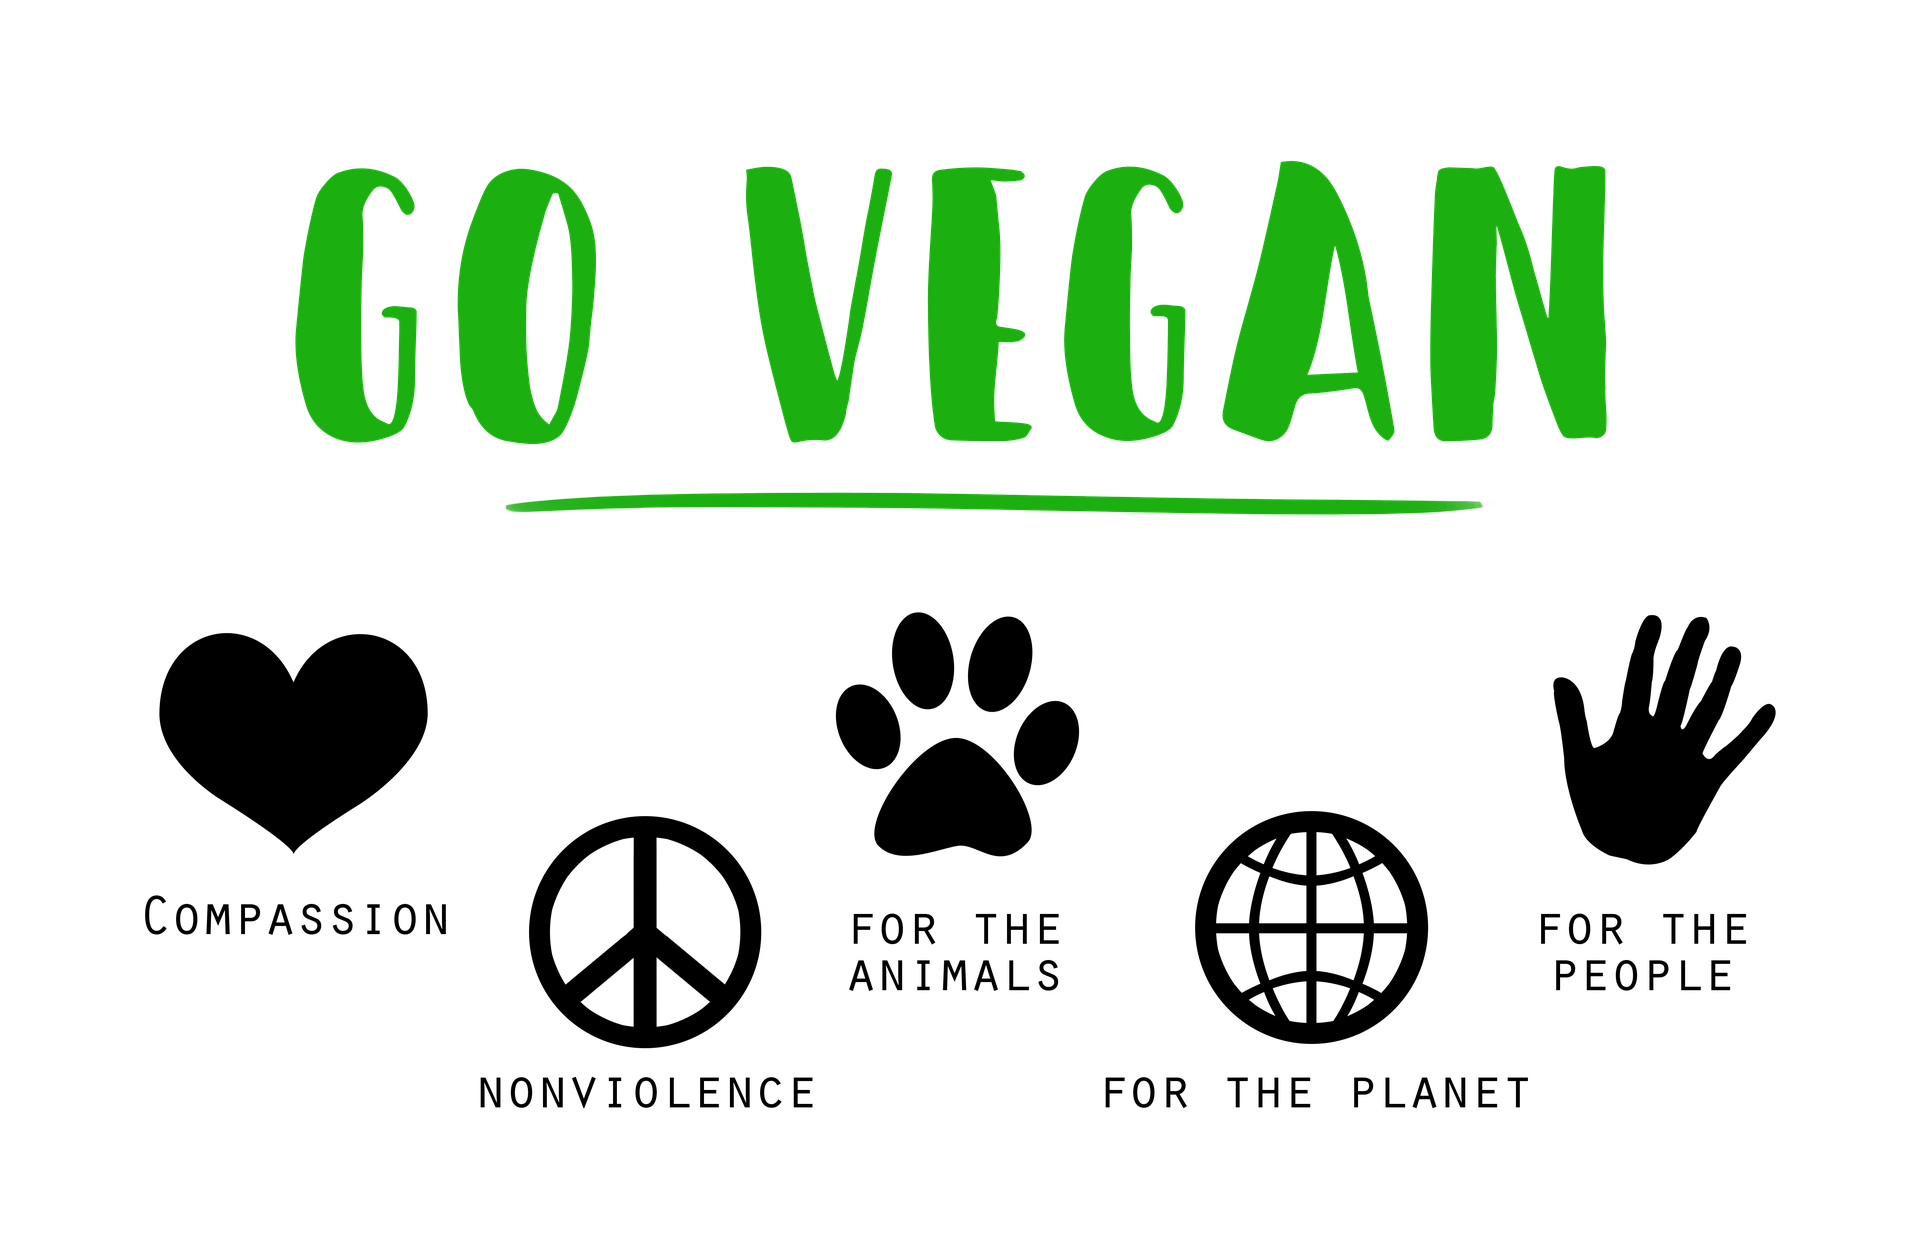 vegani